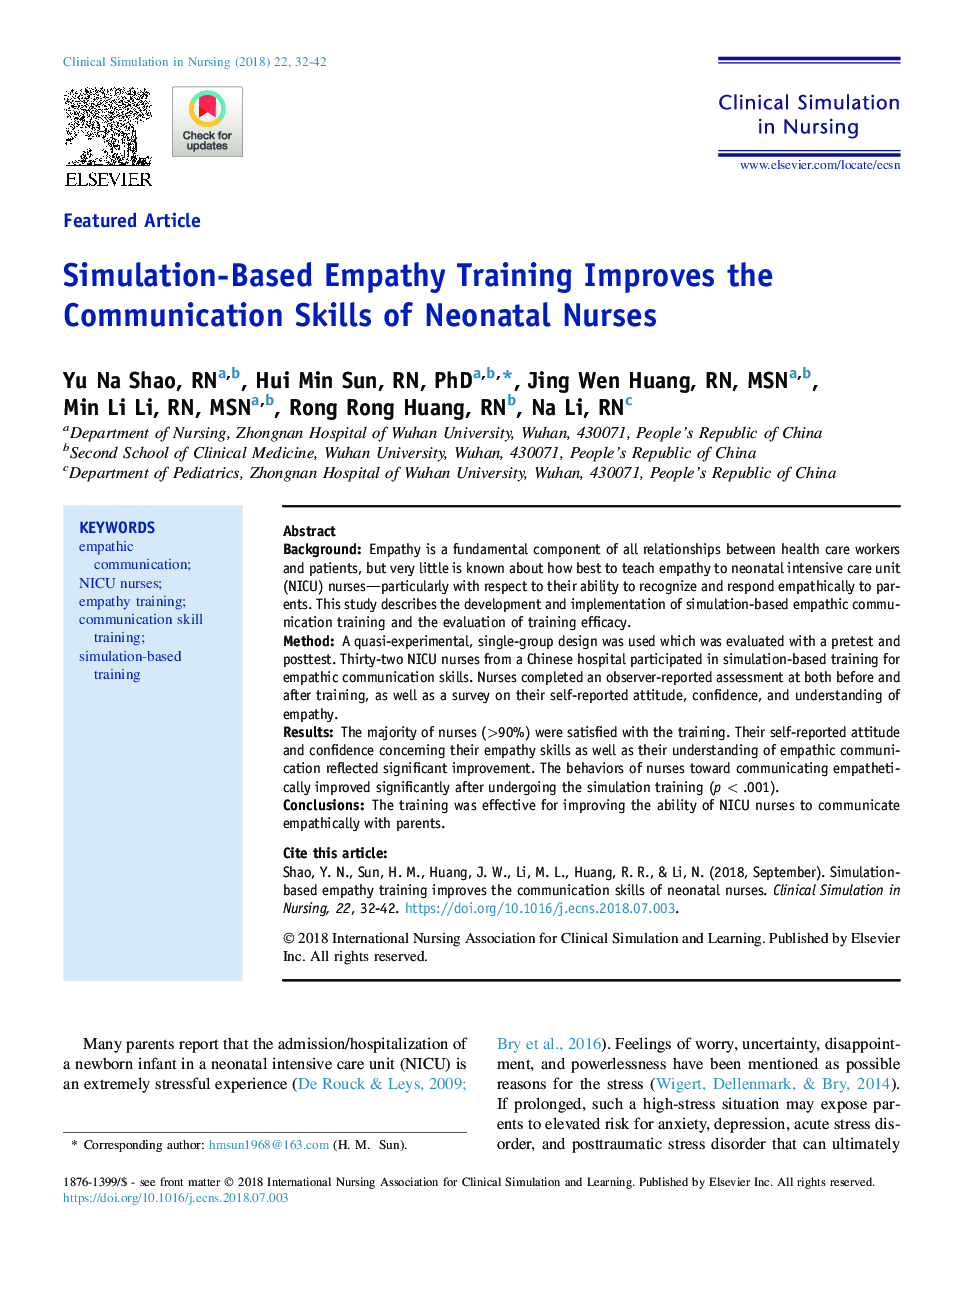 Simulation-Based Empathy Training Improves the Communication Skills of Neonatal Nurses